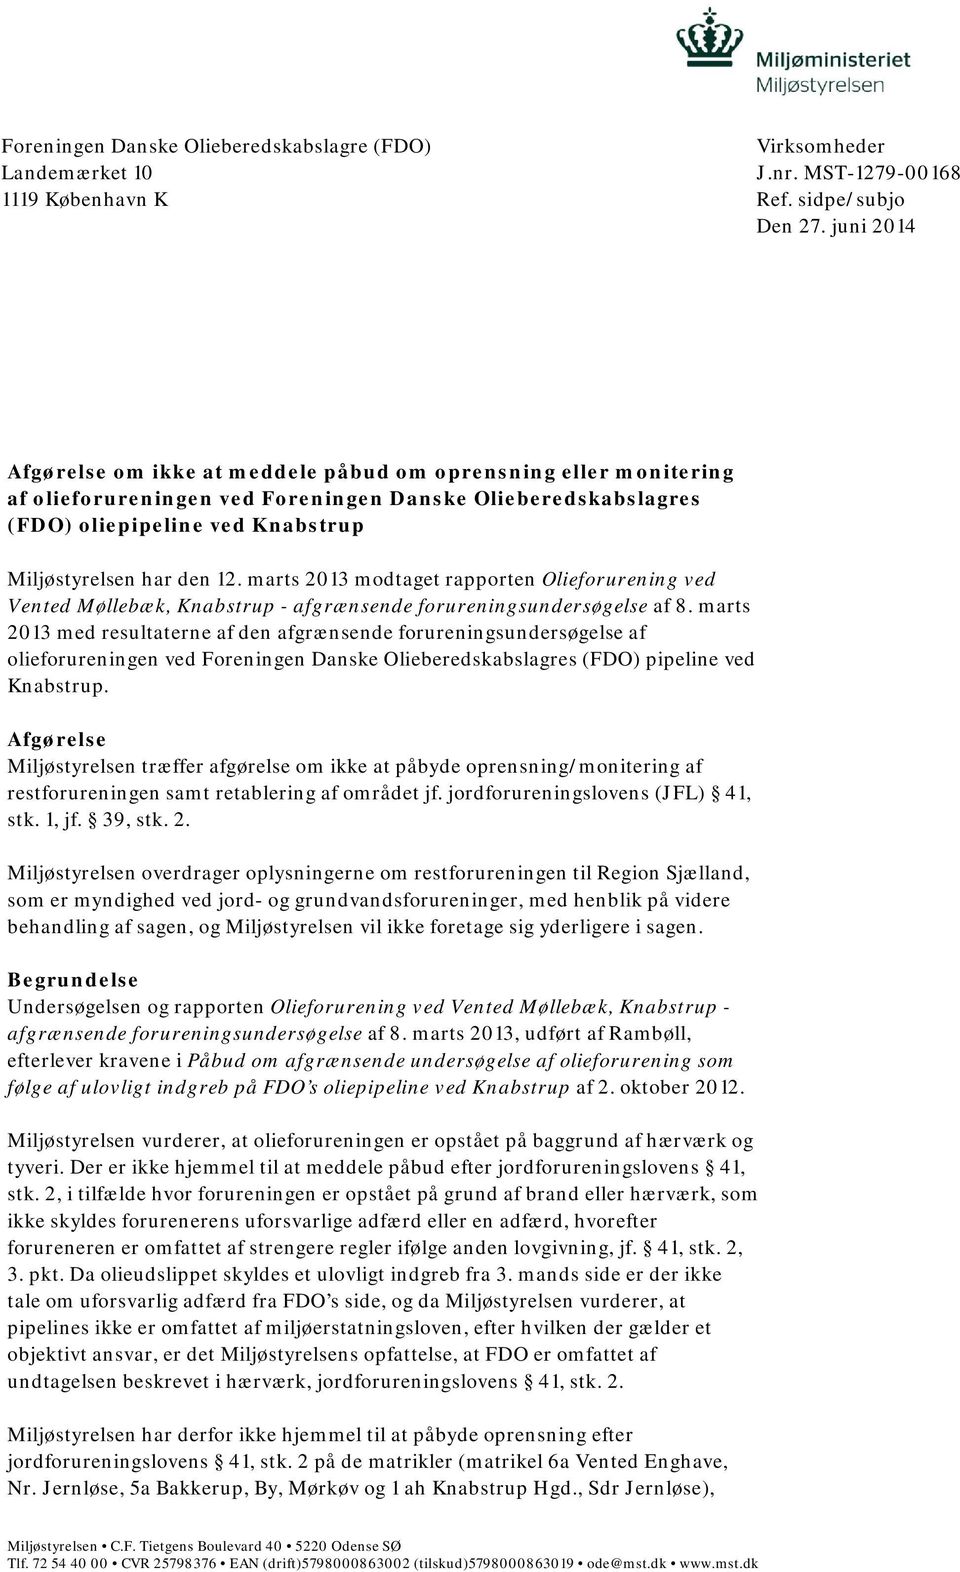 marts 2013 modtaget rapporten Olieforurening ved Vented Møllebæk, Knabstrup - afgrænsende forureningsundersøgelse af 8.